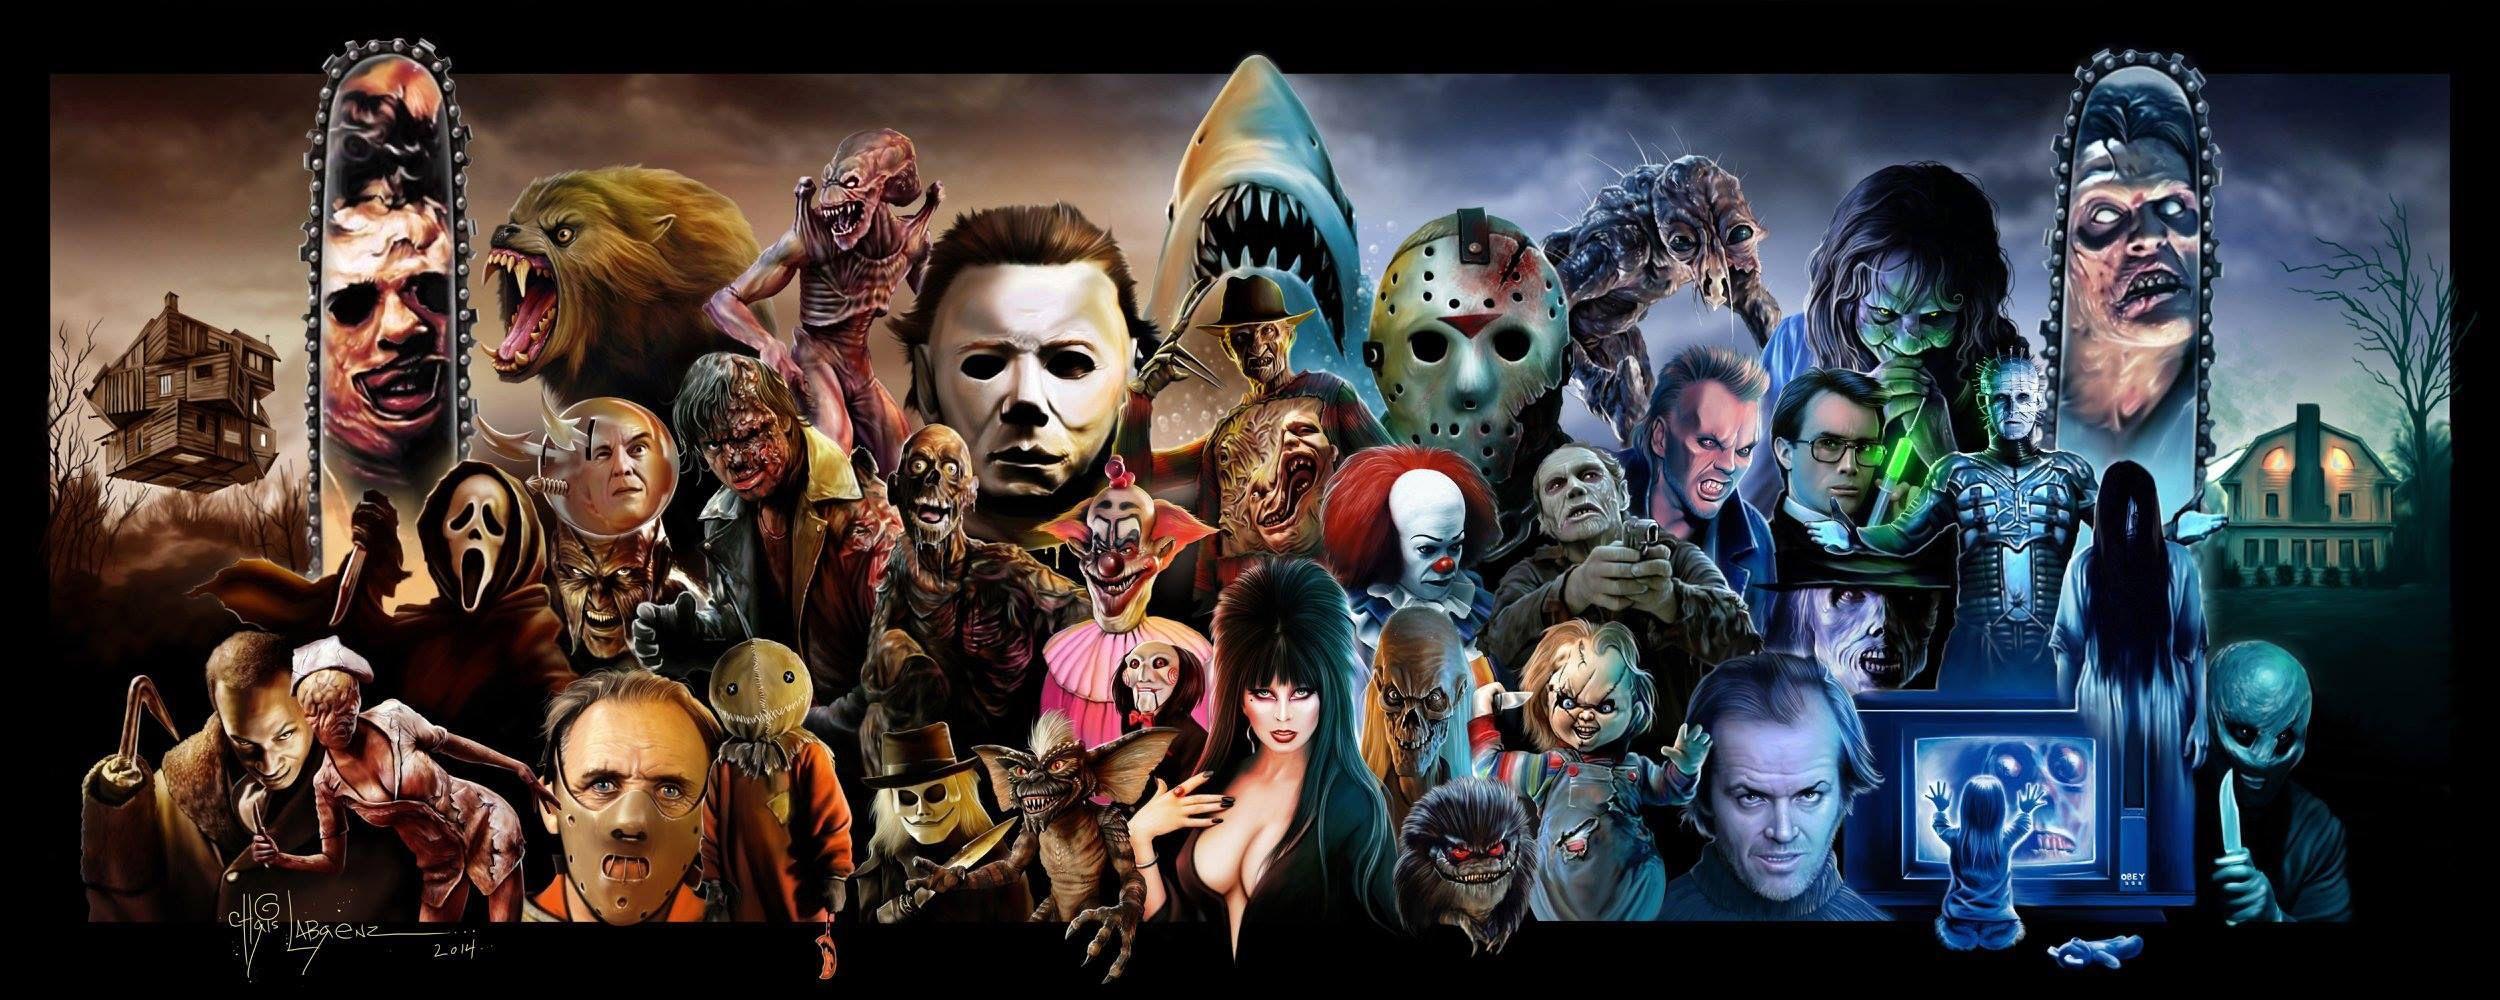 Horror Movie Desktop Wallpapers - Top ...